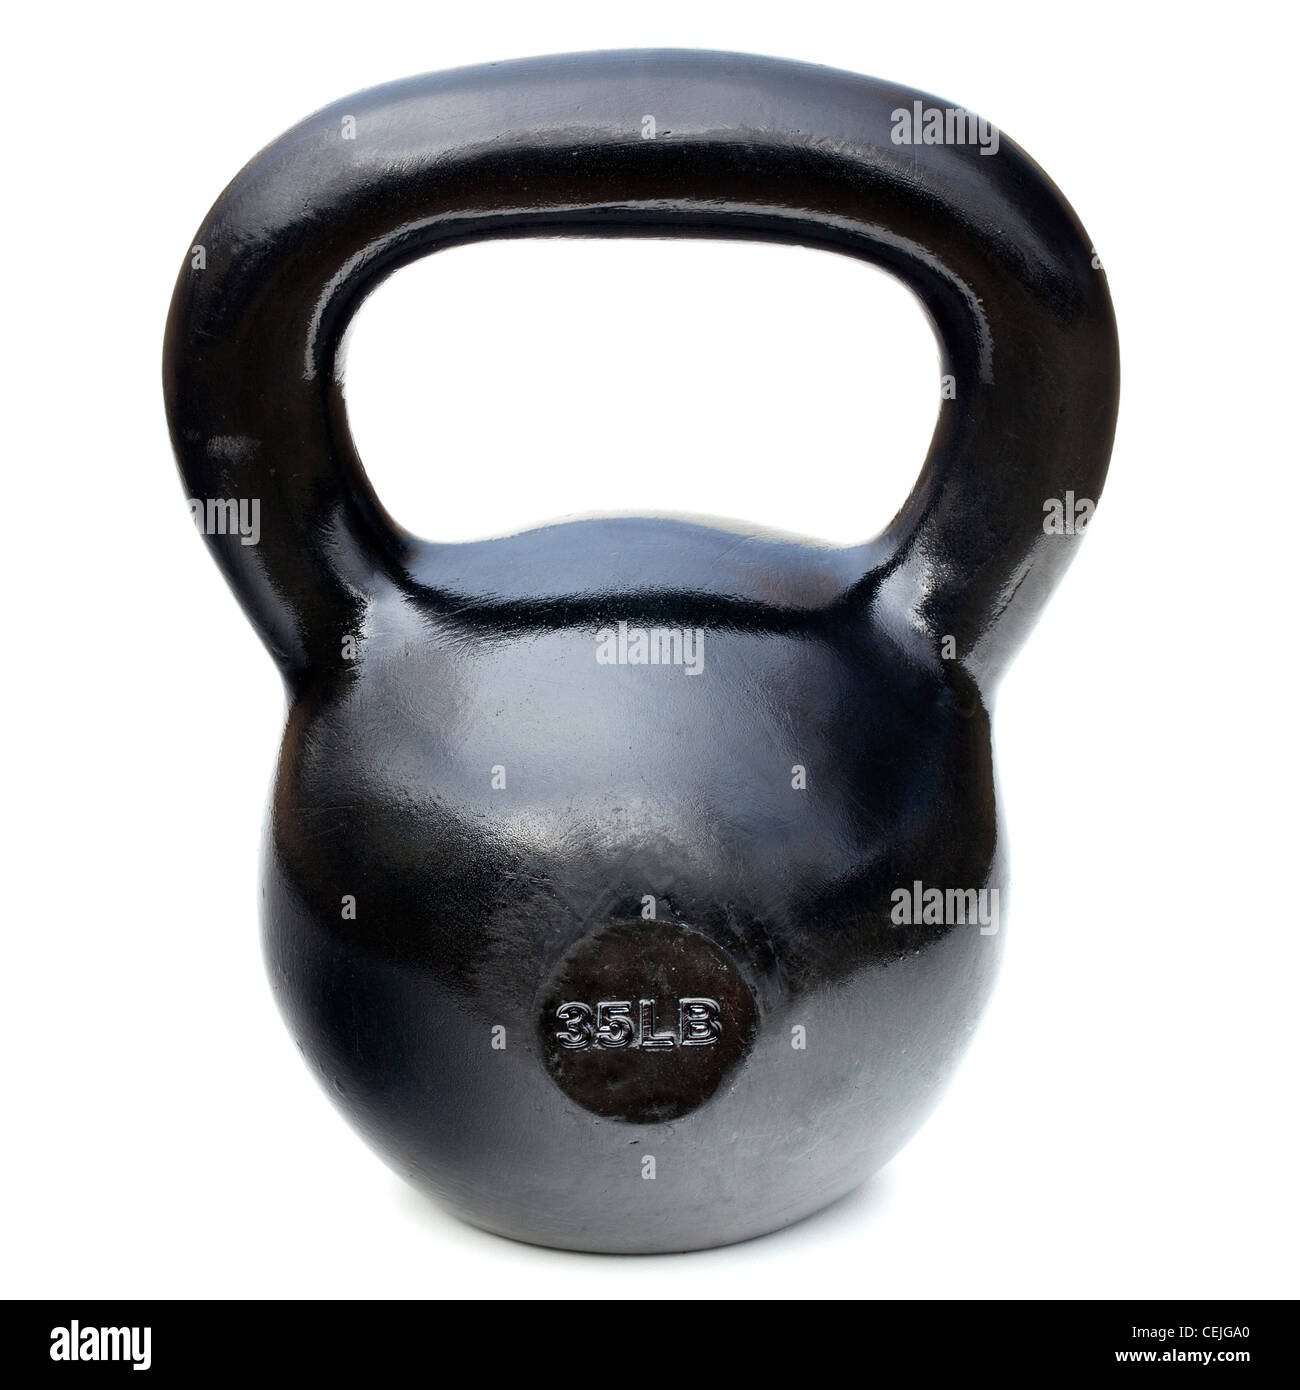 Brillant noir 35 lb pour l'haltérophilie et la fer kettlebell fitness training isolated on white Banque D'Images